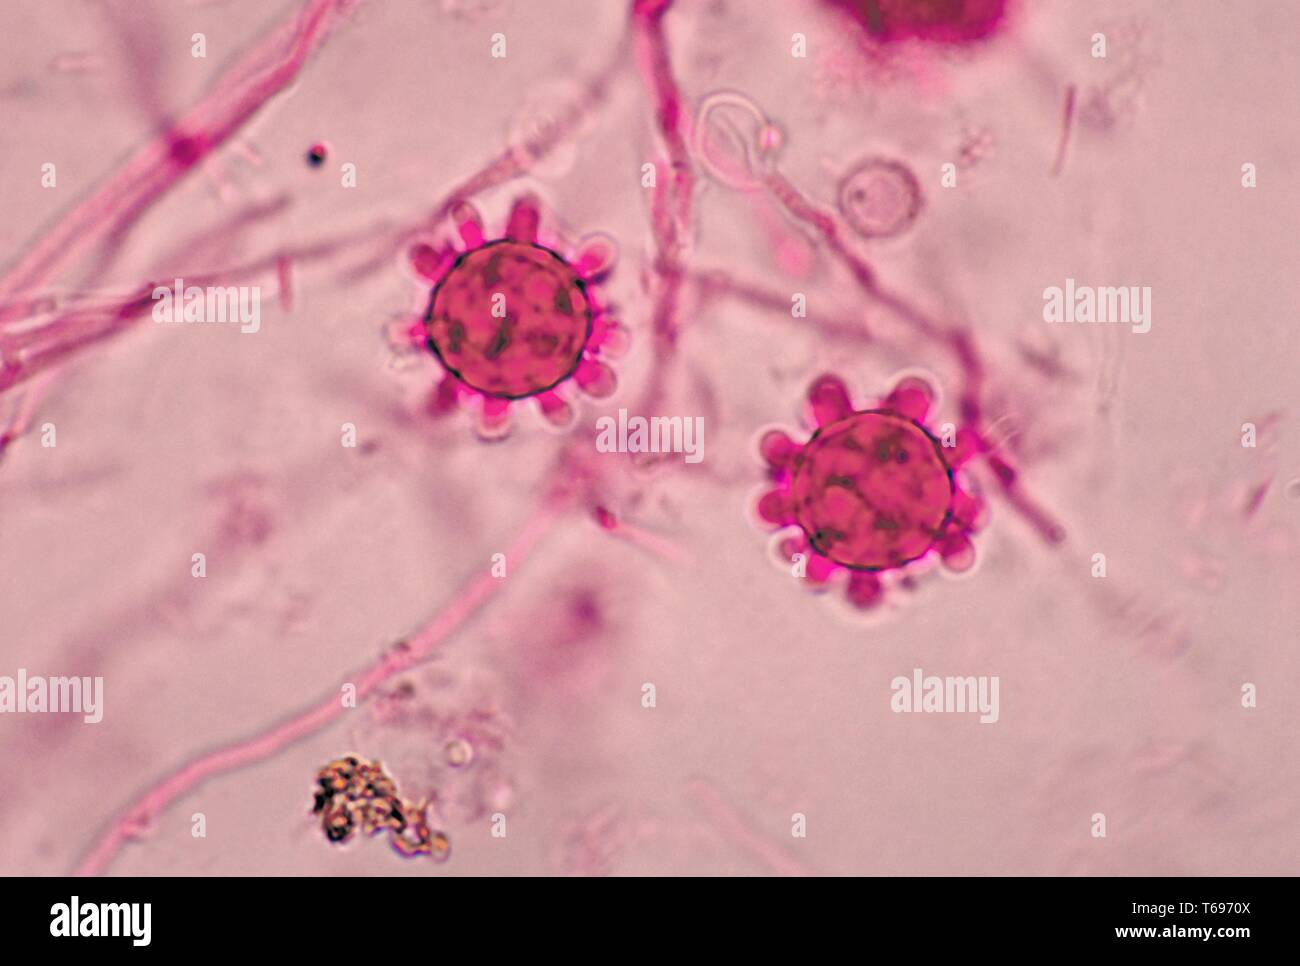 Photomicrograph der Jamaikanischen isolieren tuberculate macroconidia der dimorphic Pilz Histoplasma capsulatum, 1968. Bild mit freundlicher Genehmigung Zentren für Krankheitskontrolle und Prävention (CDC)/Dr Libero Ajello. () Stockfoto